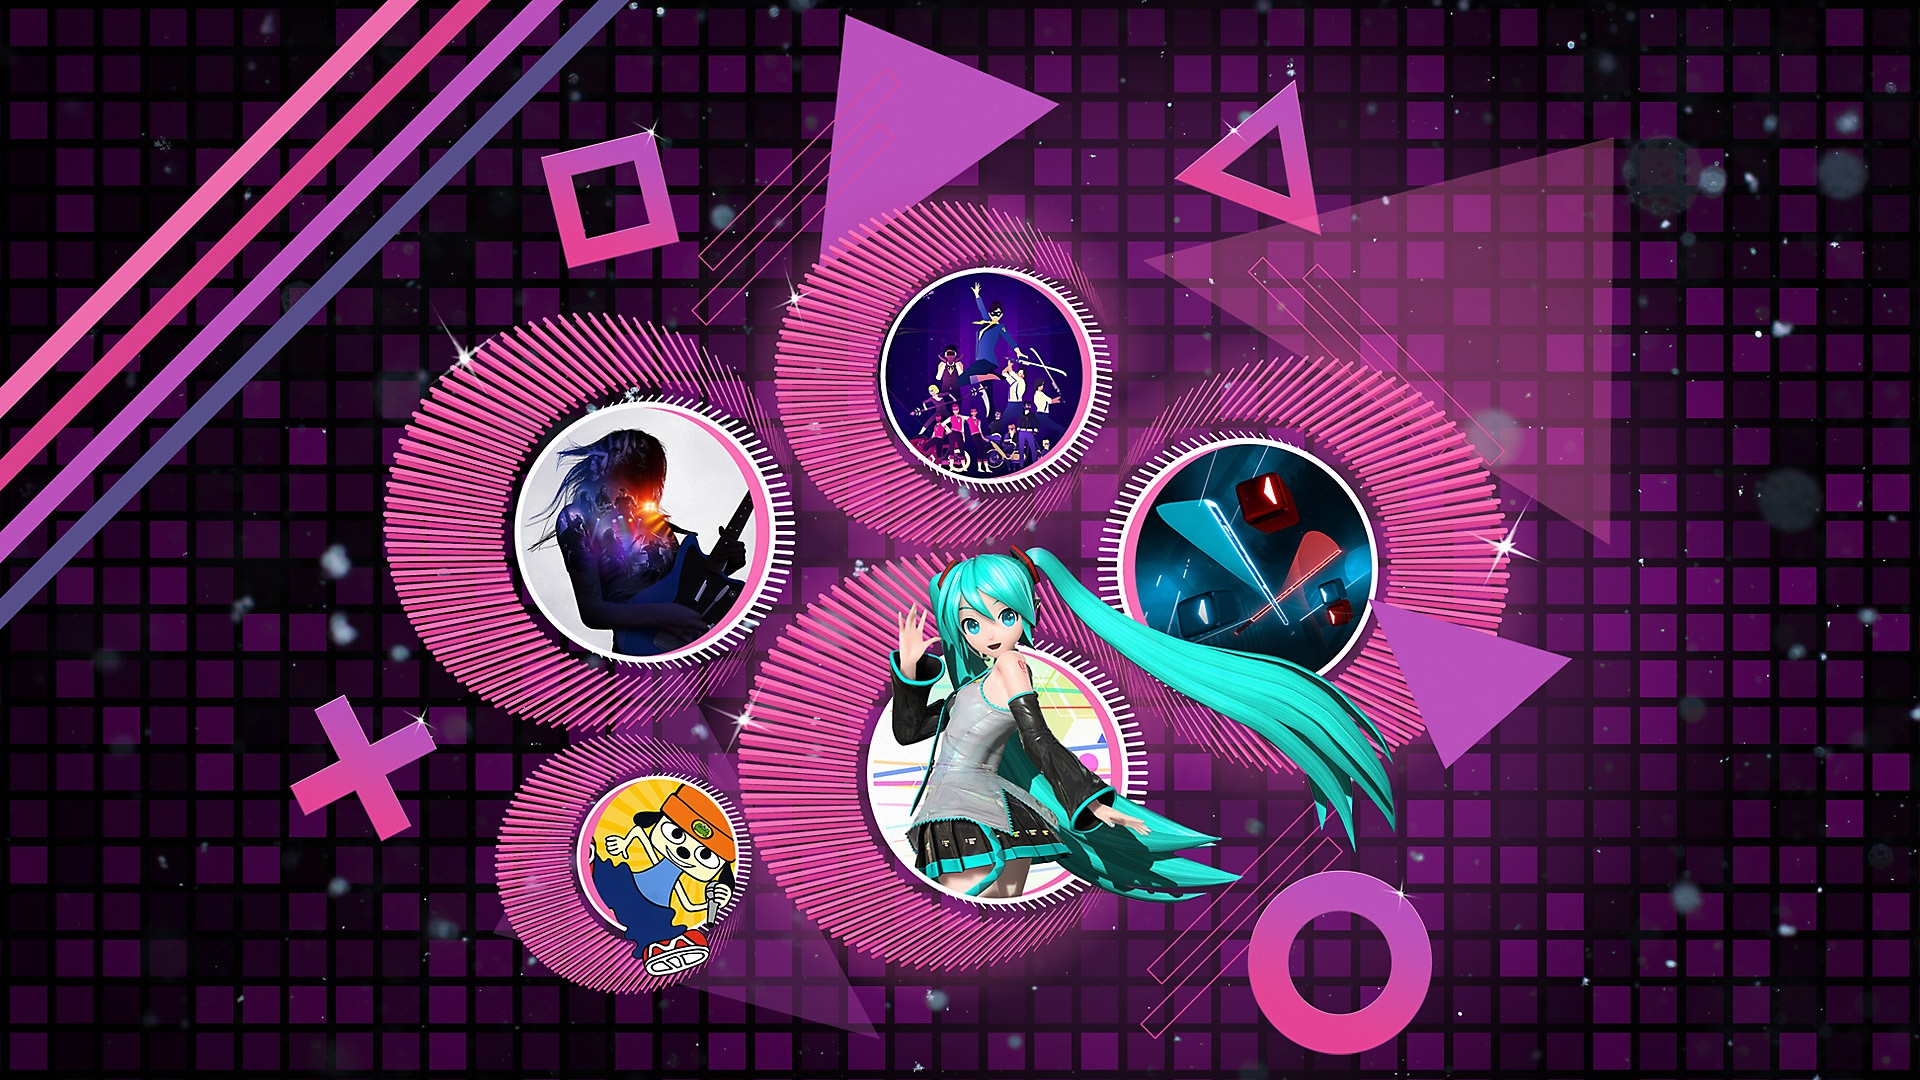 الصورة الفنية الترويجية لأفضل ألعاب الإيقاع الموسيقي على جهازي PS4 و PS5 تظهر فيها ألعاب Rock Band 4 و PaRappa the Rapper Remastered و Hatsune Miku Project Diva X و Beat Saber و Sayonara Wild Hearts.